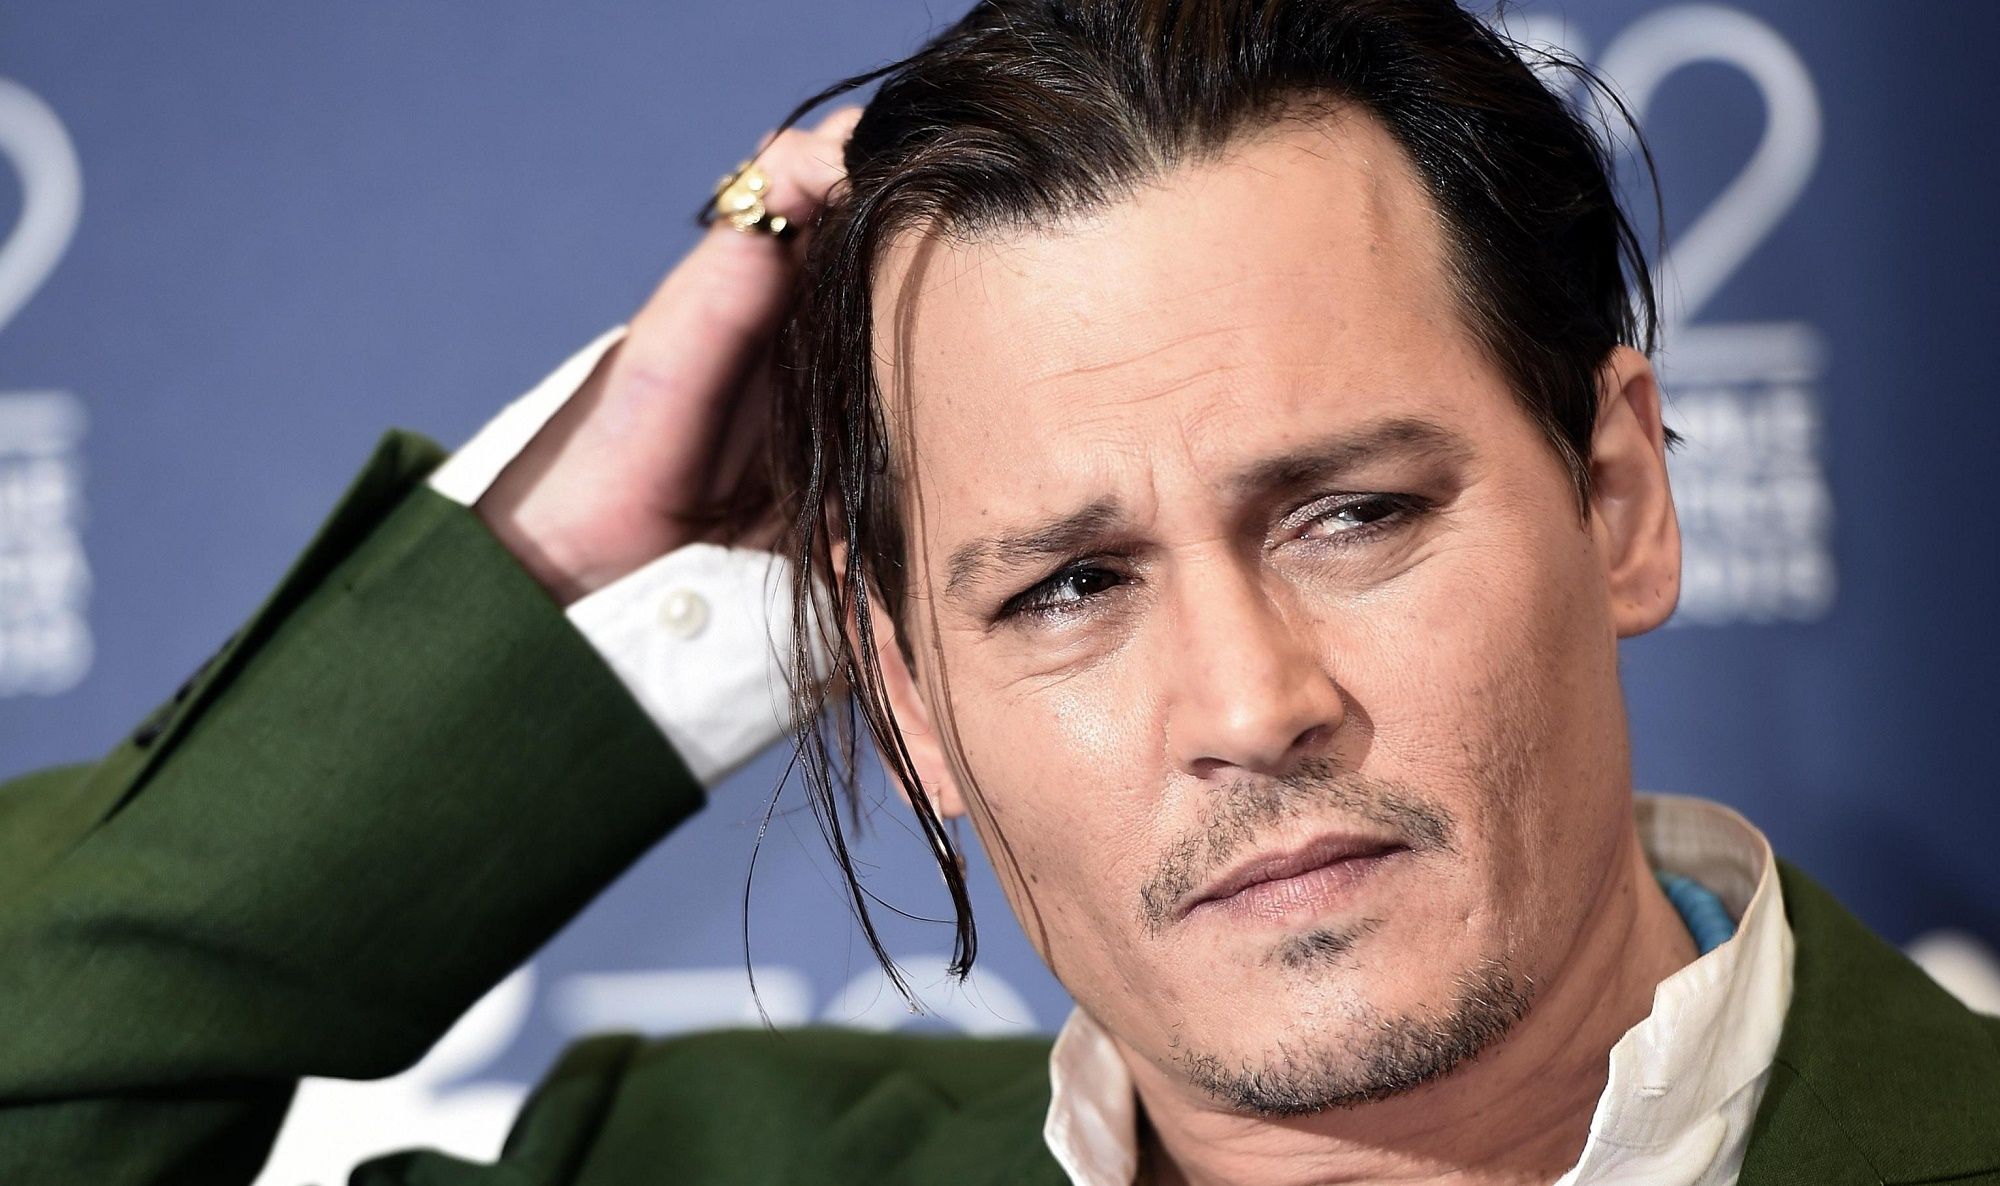 Johnny Depp ingrassato a Venezia: su Facebook la lettera di una fan!